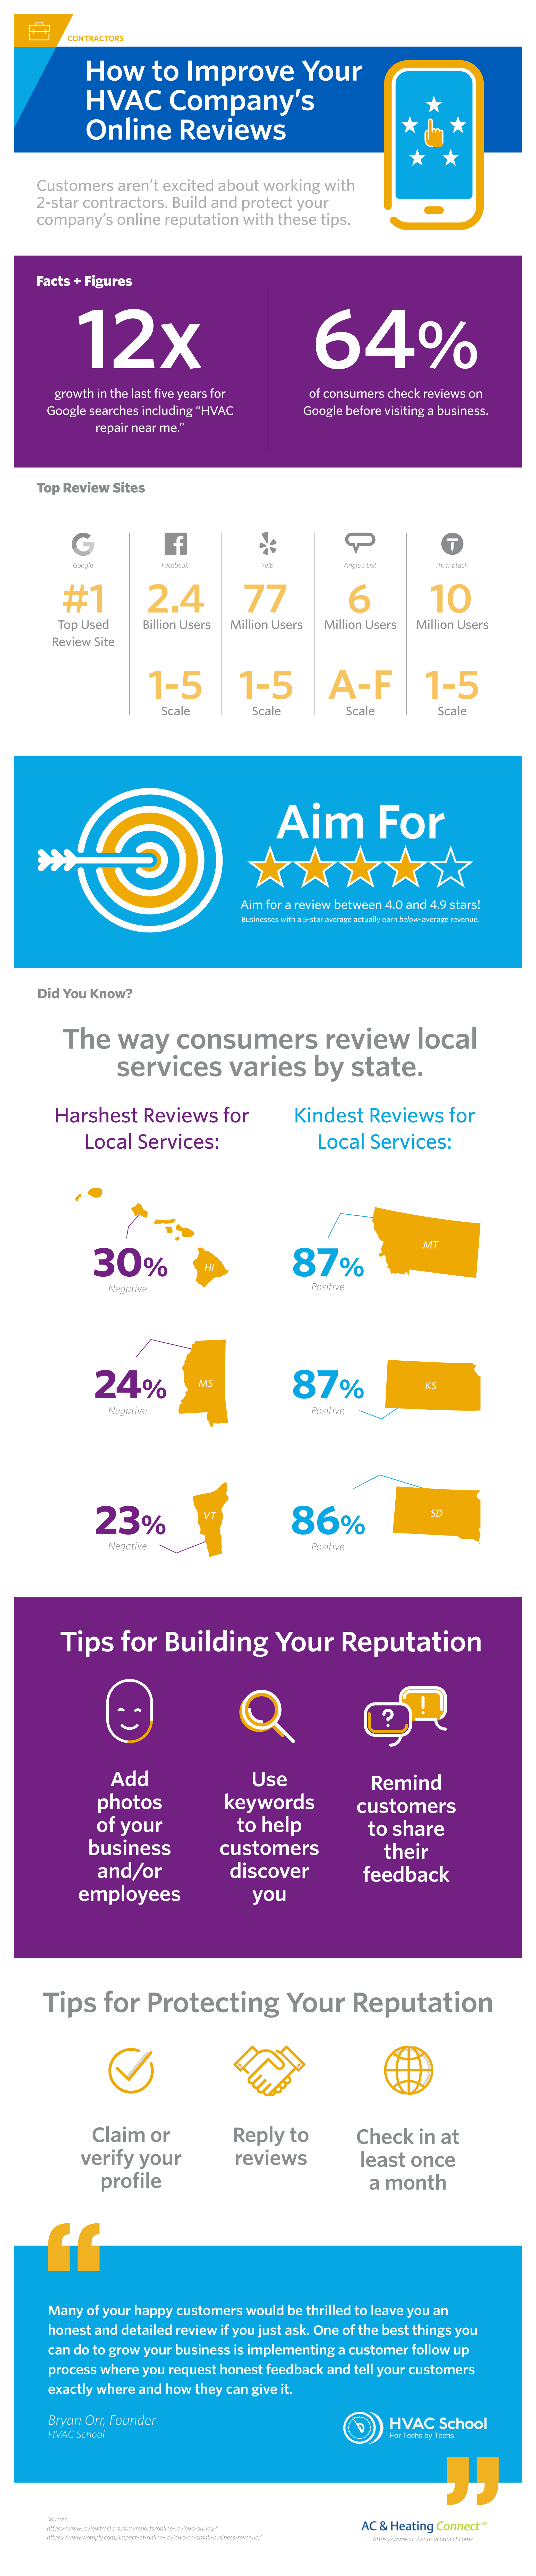 HVAC Reviews Infographic